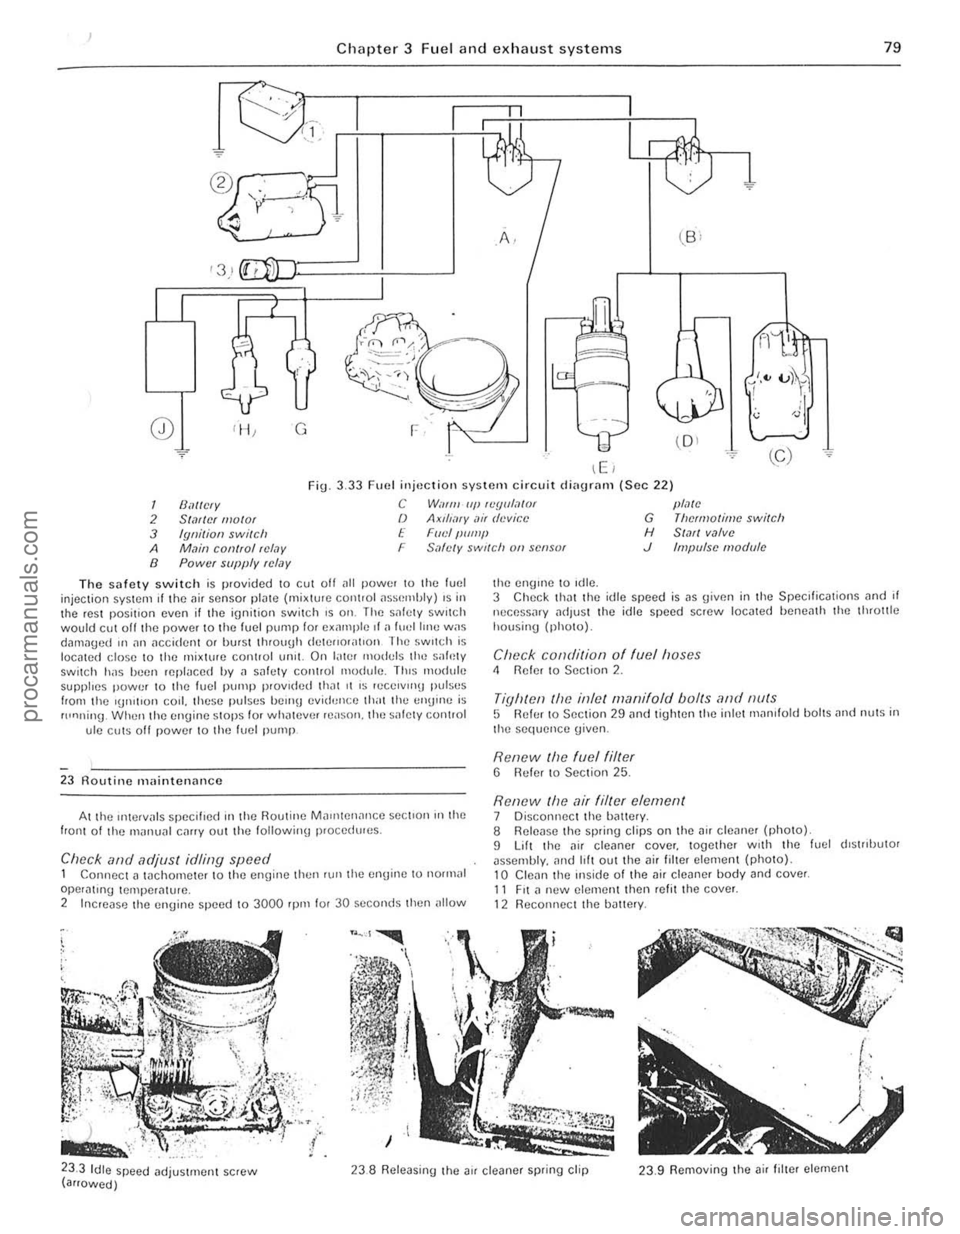 FORD CAPRI 1974  Workshop Manual ) 
Chapte r 3 Fu el an d exhau st systems 79 
Ii 
0) G 
\E ) 
 .. ~ ee) 
Fig. 3.33 Fuel injuctiOIl system circuit di<lUrnrn (Sec 22) 
1 /J,1I1C 1V C W"lflll (If! luyu/,lor plMC 
2 Sialicr I/Iolor /)